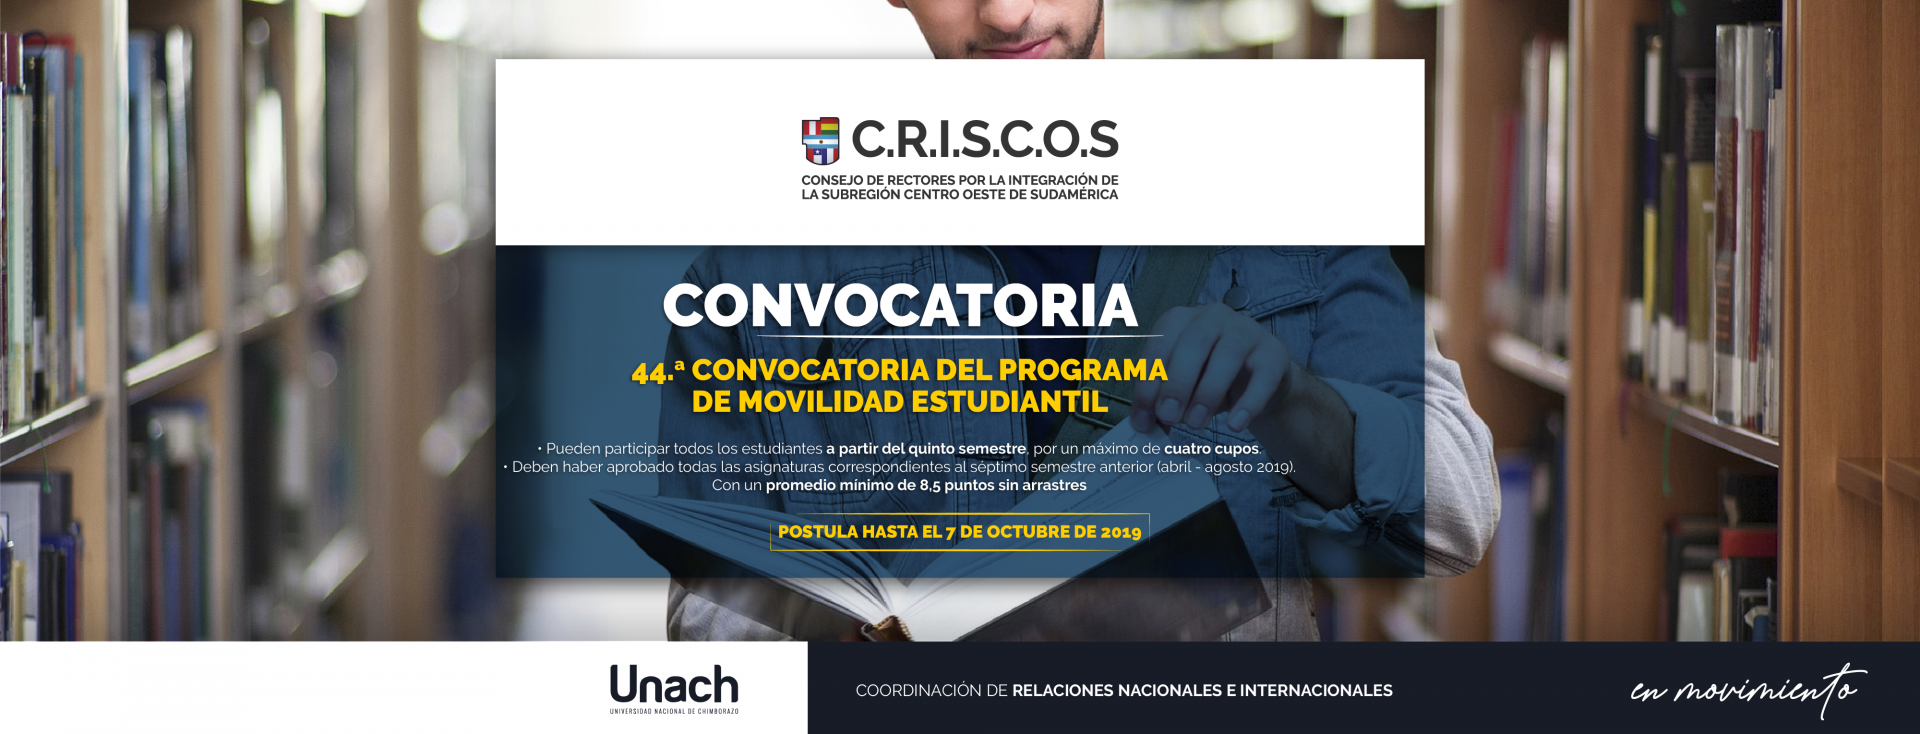 44ª CONVOCATORIA DEL PROGRAMA DE MOVILIDAD ESTUDIANTIL DE CRISCOS